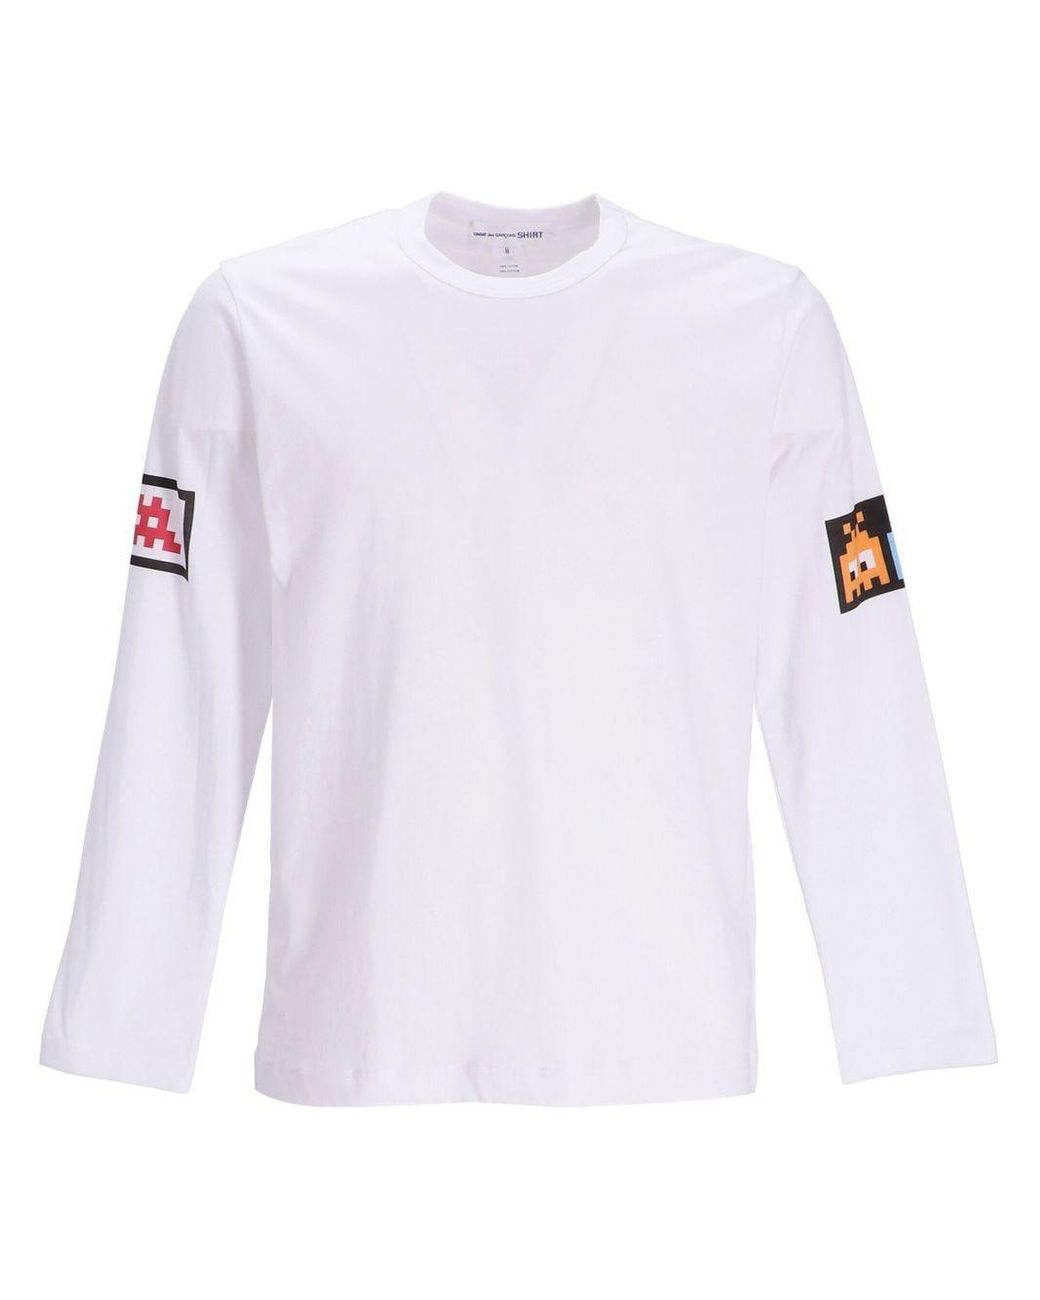 T-shirt a maniche lunghe con stampa grafica Bianco Farfetch Abbigliamento Top e t-shirt T-shirt T-shirt a maniche lunghe 